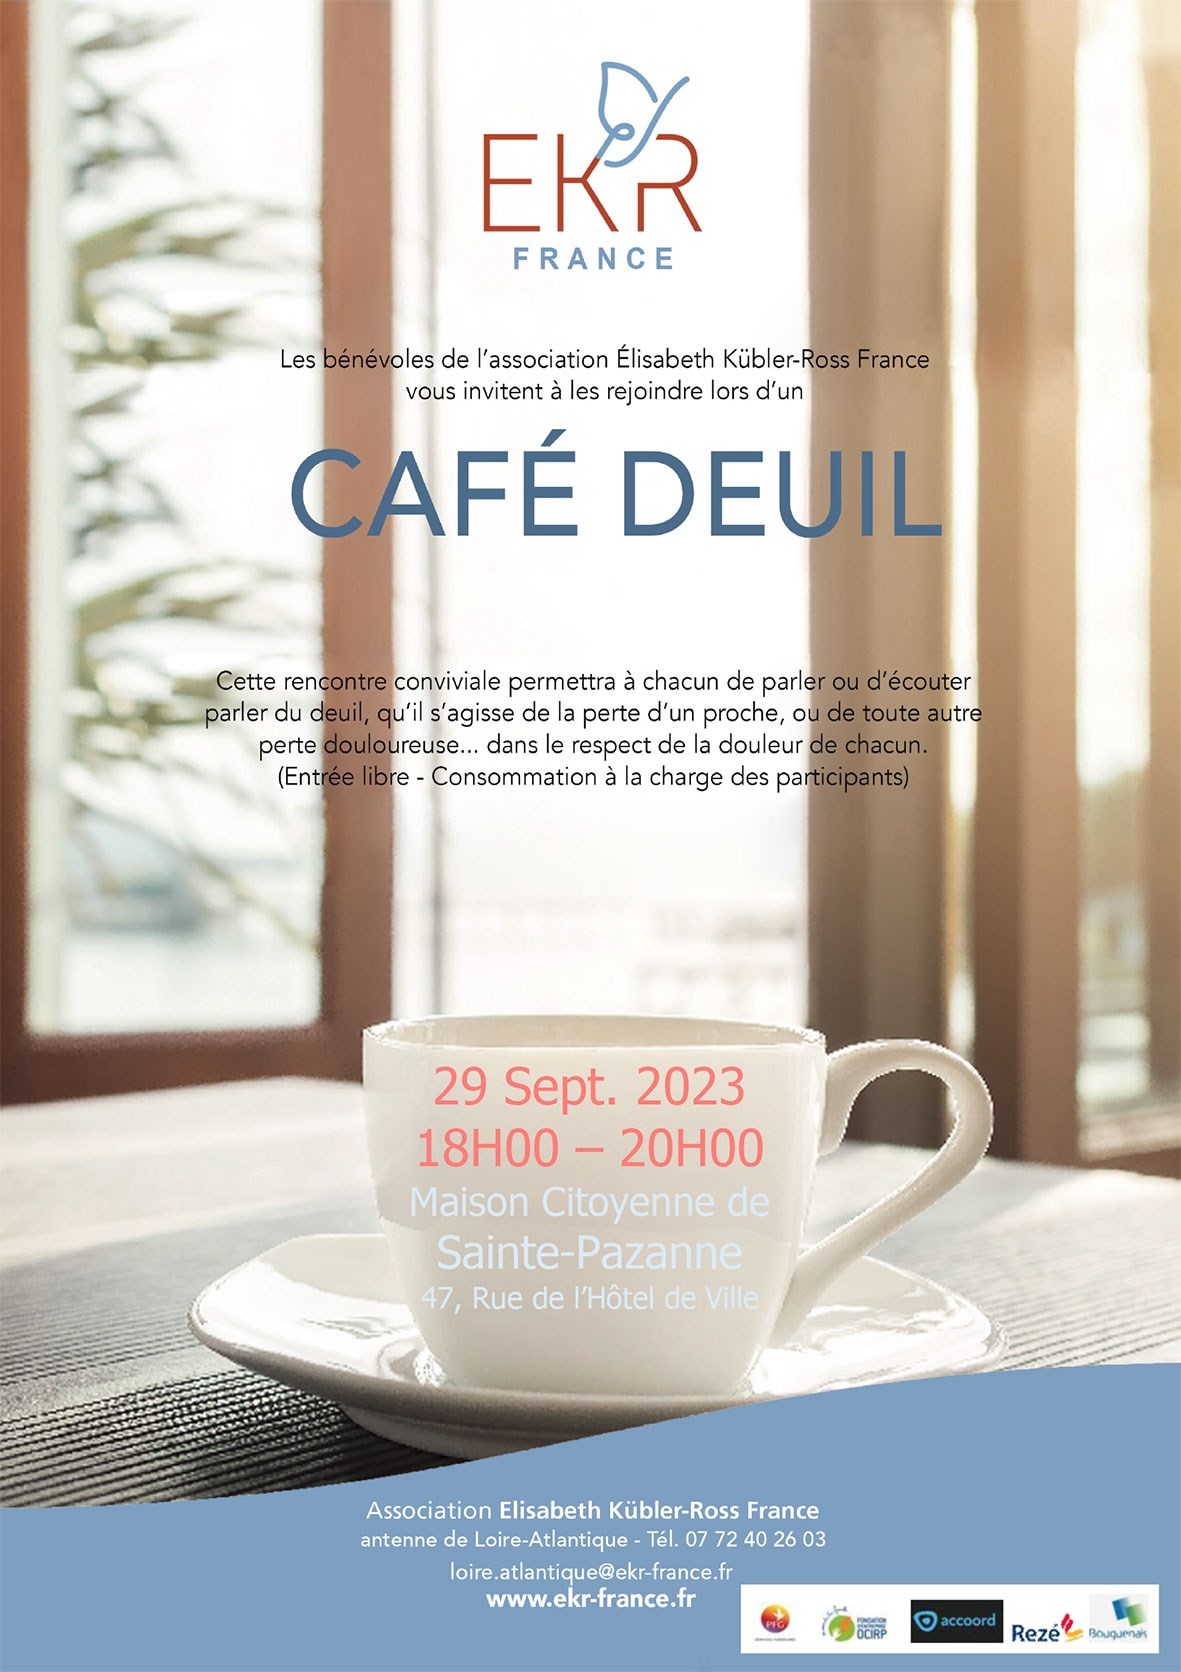 Café deuil © Association EKR France